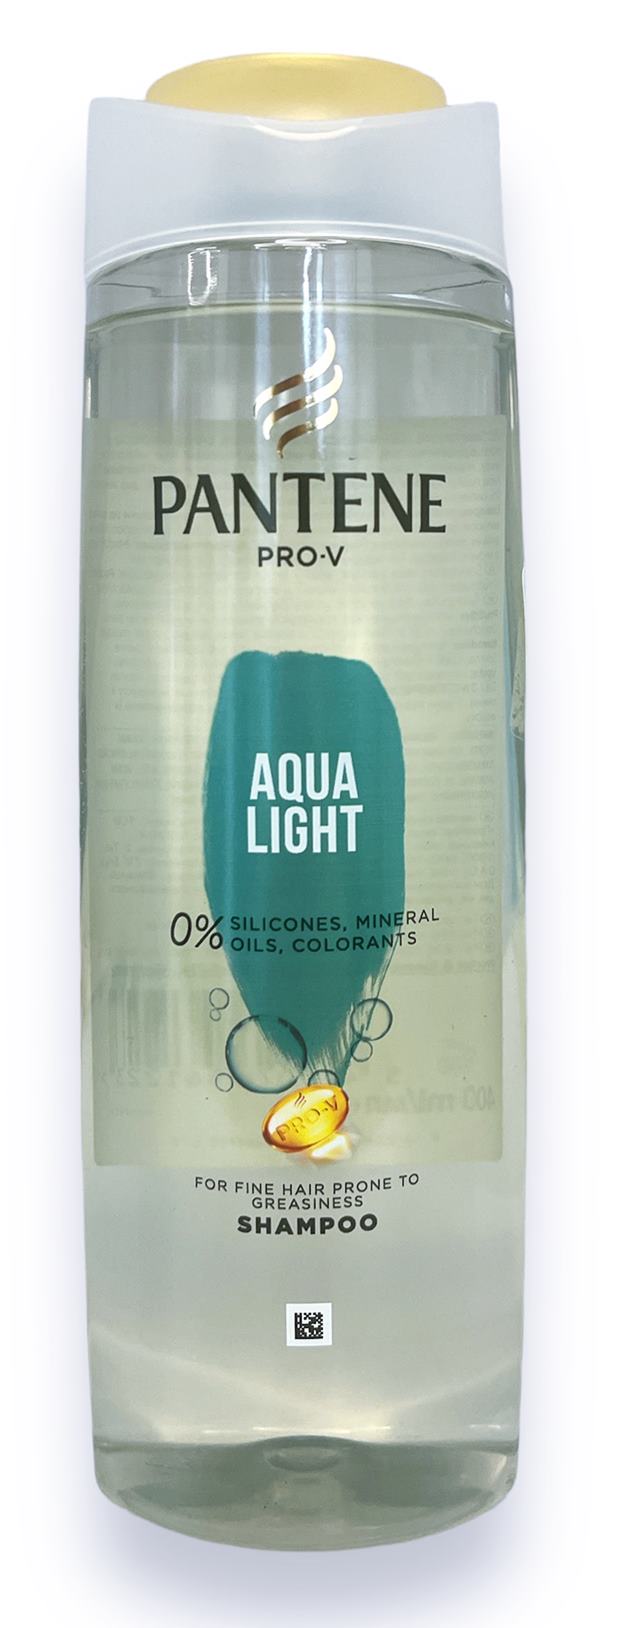 Шампоан PANTENE Aqua light 400ml R /6 броя в кашон/